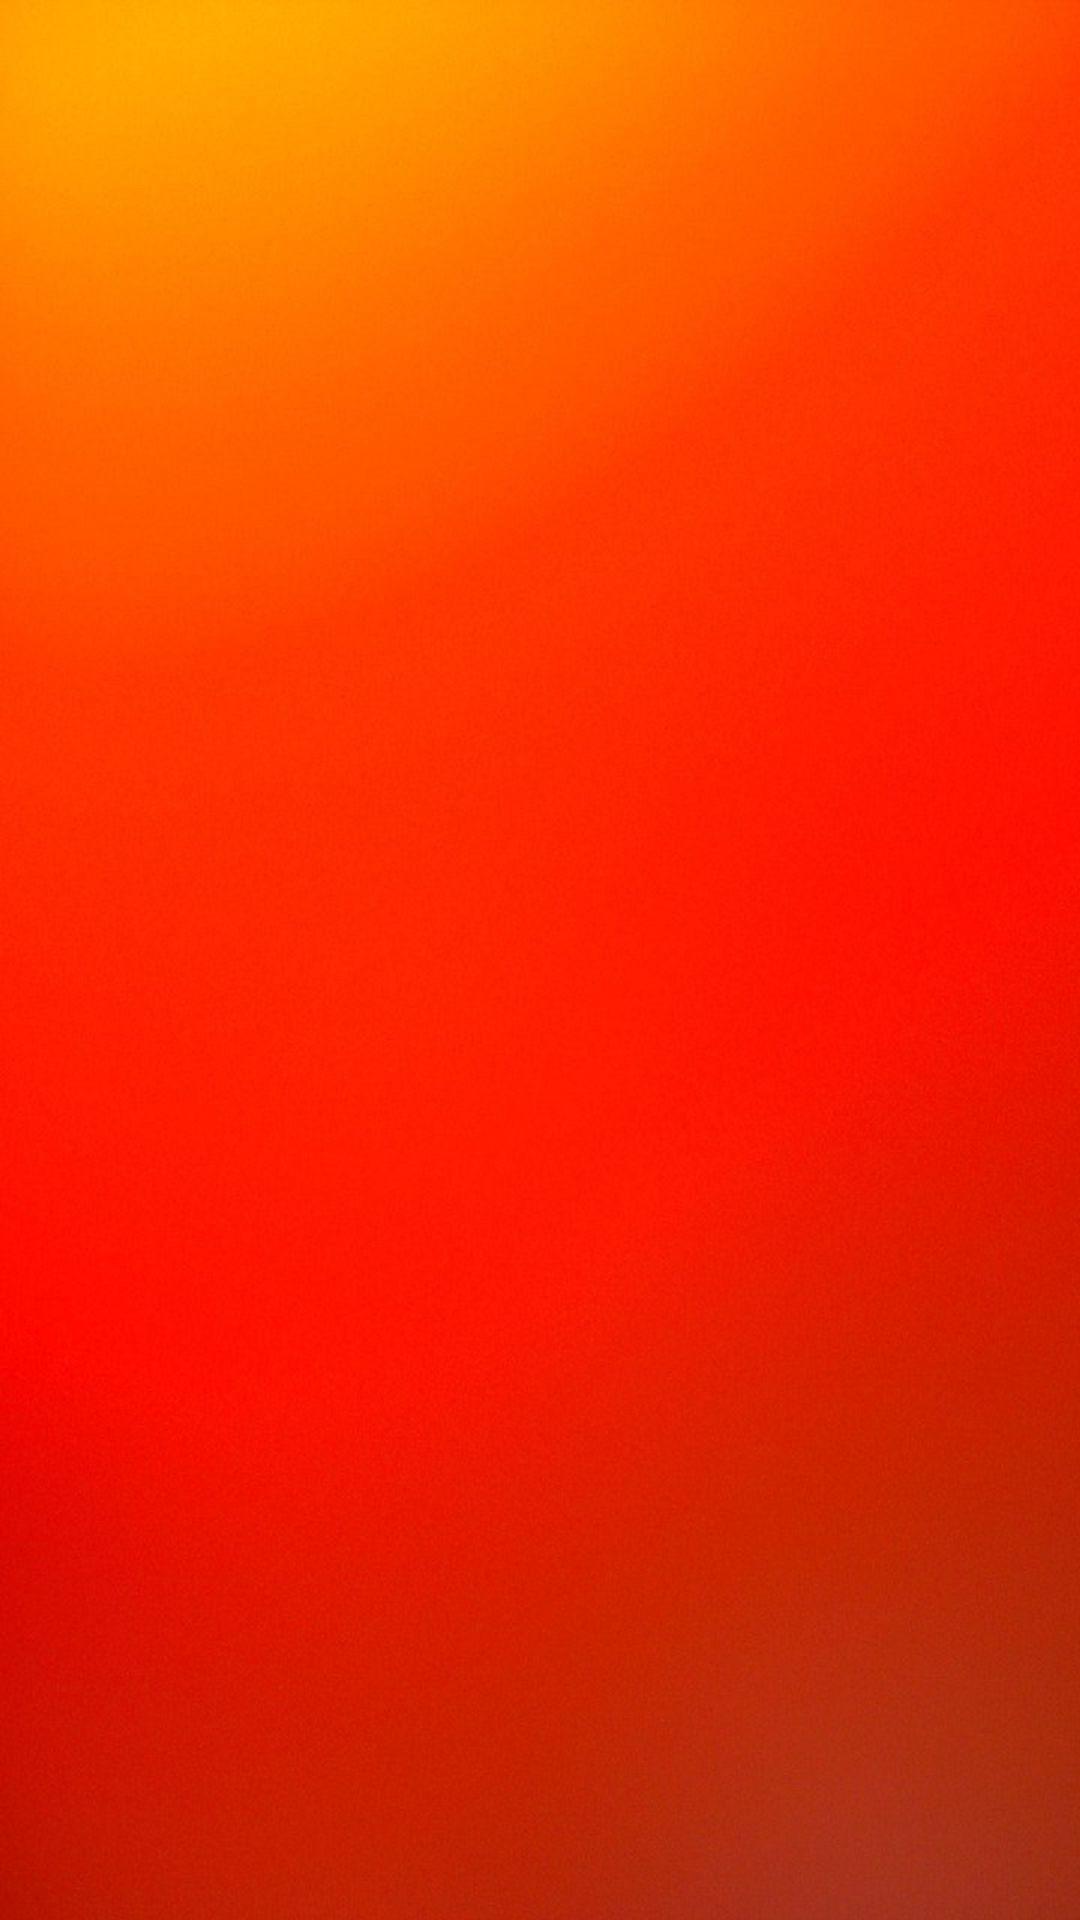 Nếu bạn yêu thích màu sắc nóng bỏng của màu đỏ và cam, hãy cùng trải nghiệm các hình nền màu đỏ và cam của chúng tôi. Với sự kết hợp táo bạo giữa các gam màu đậm, các hình nền này sẽ giúp bạn tạo ra một màn hình tràn đầy sức sống và sự năng động.